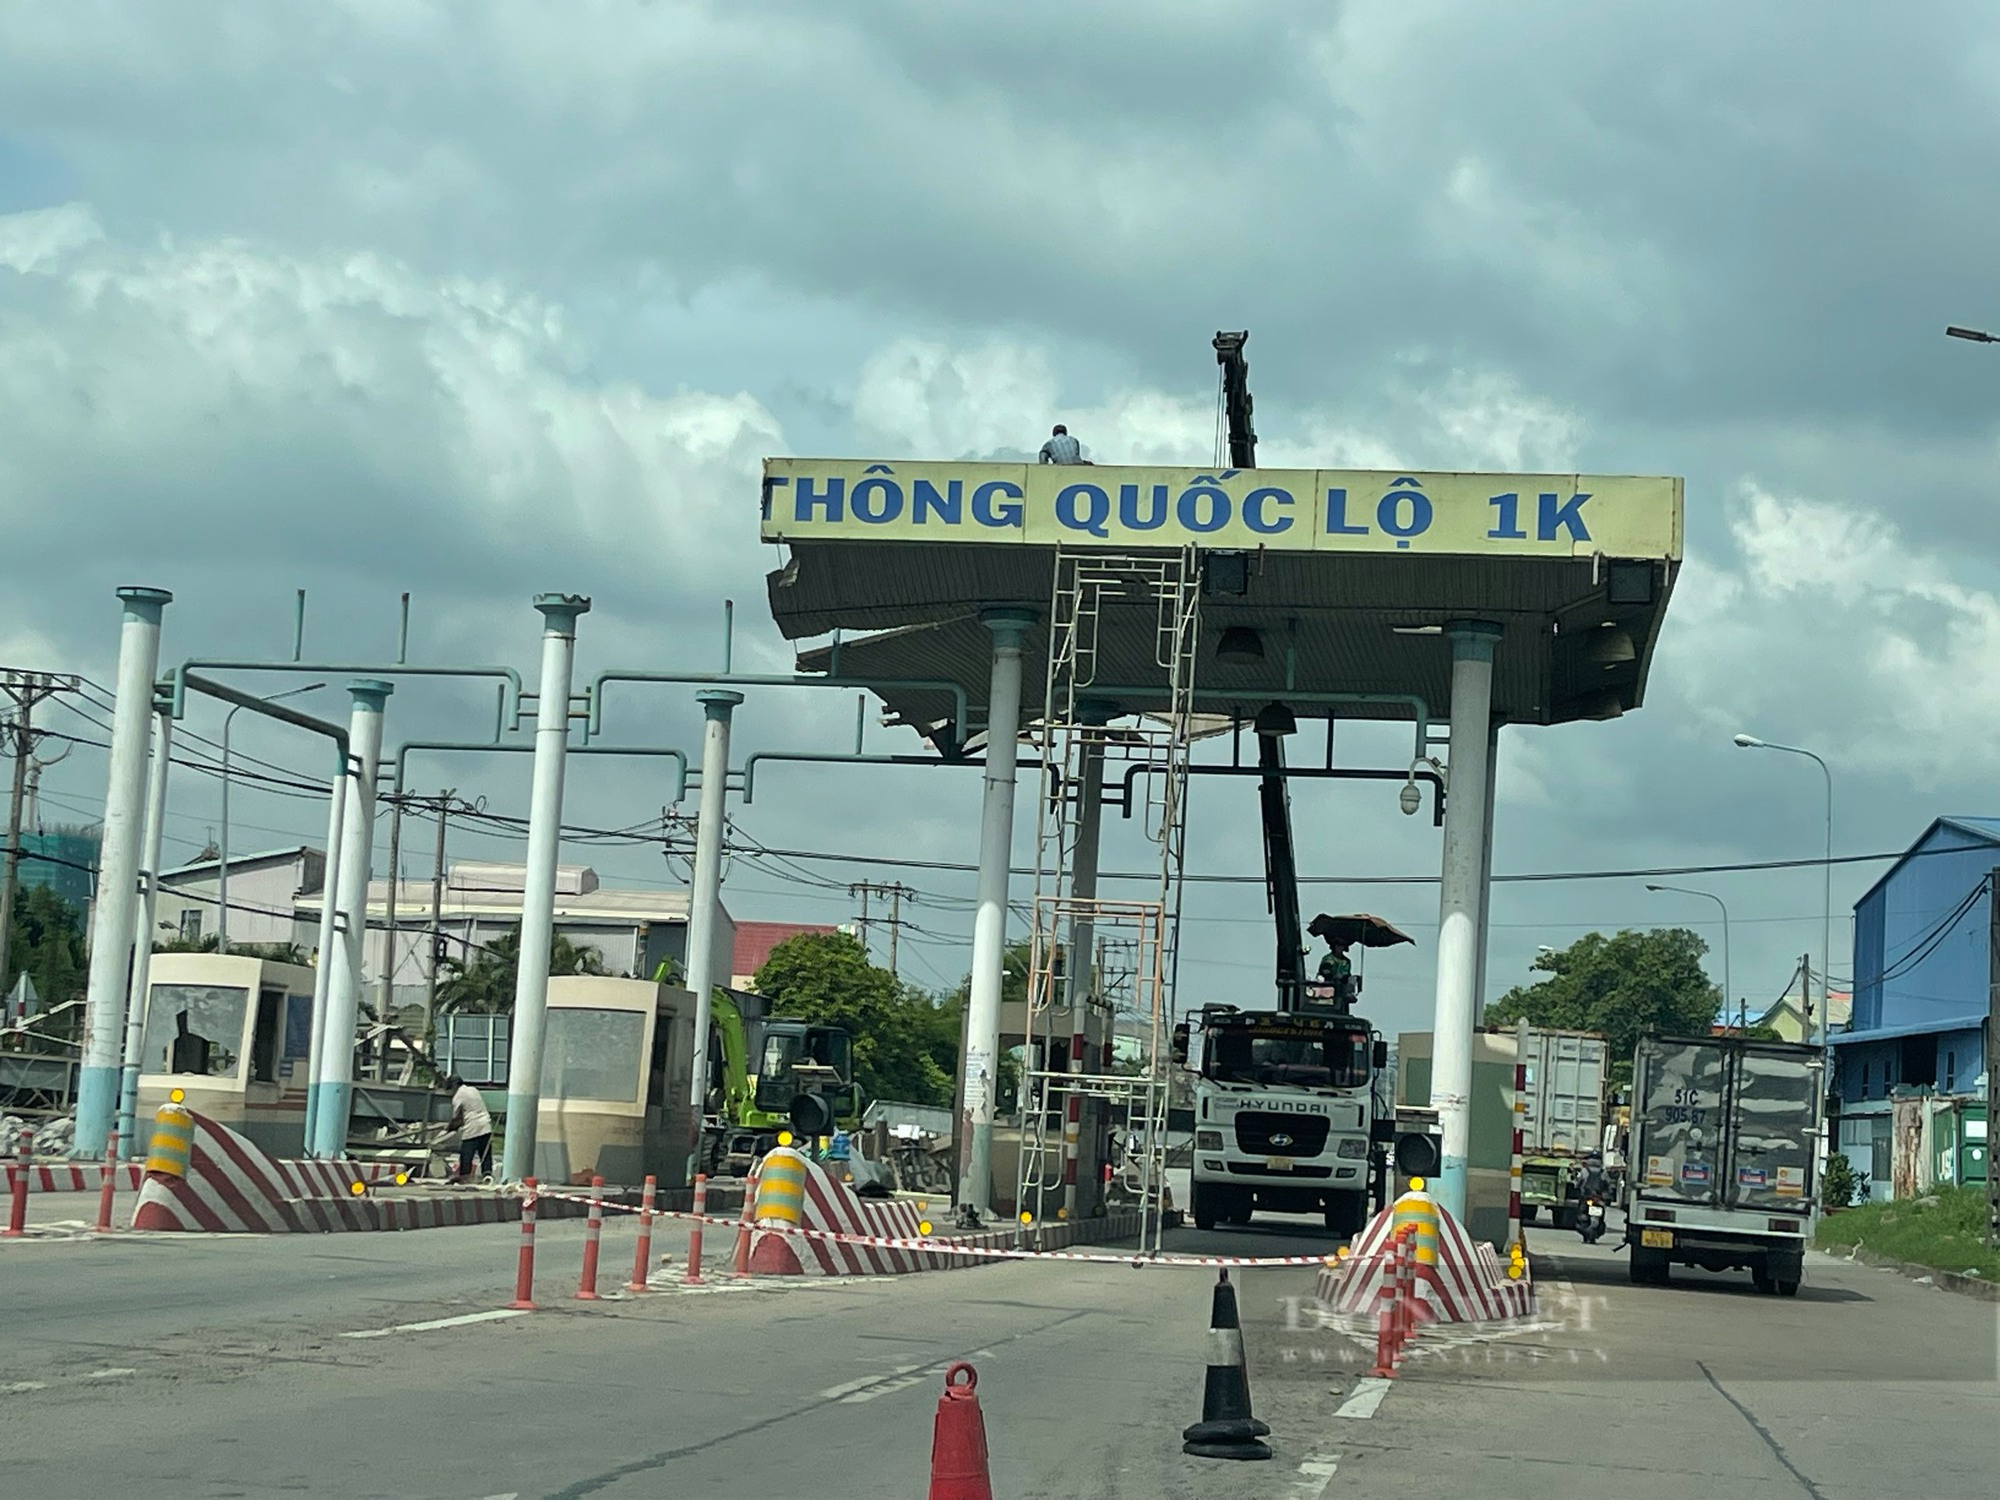 Tháo dỡ 2 trạm thu phí, giao QL1K về cho Đồng Nai, Bình Dương, TP.HCM quản lý - Ảnh 2.